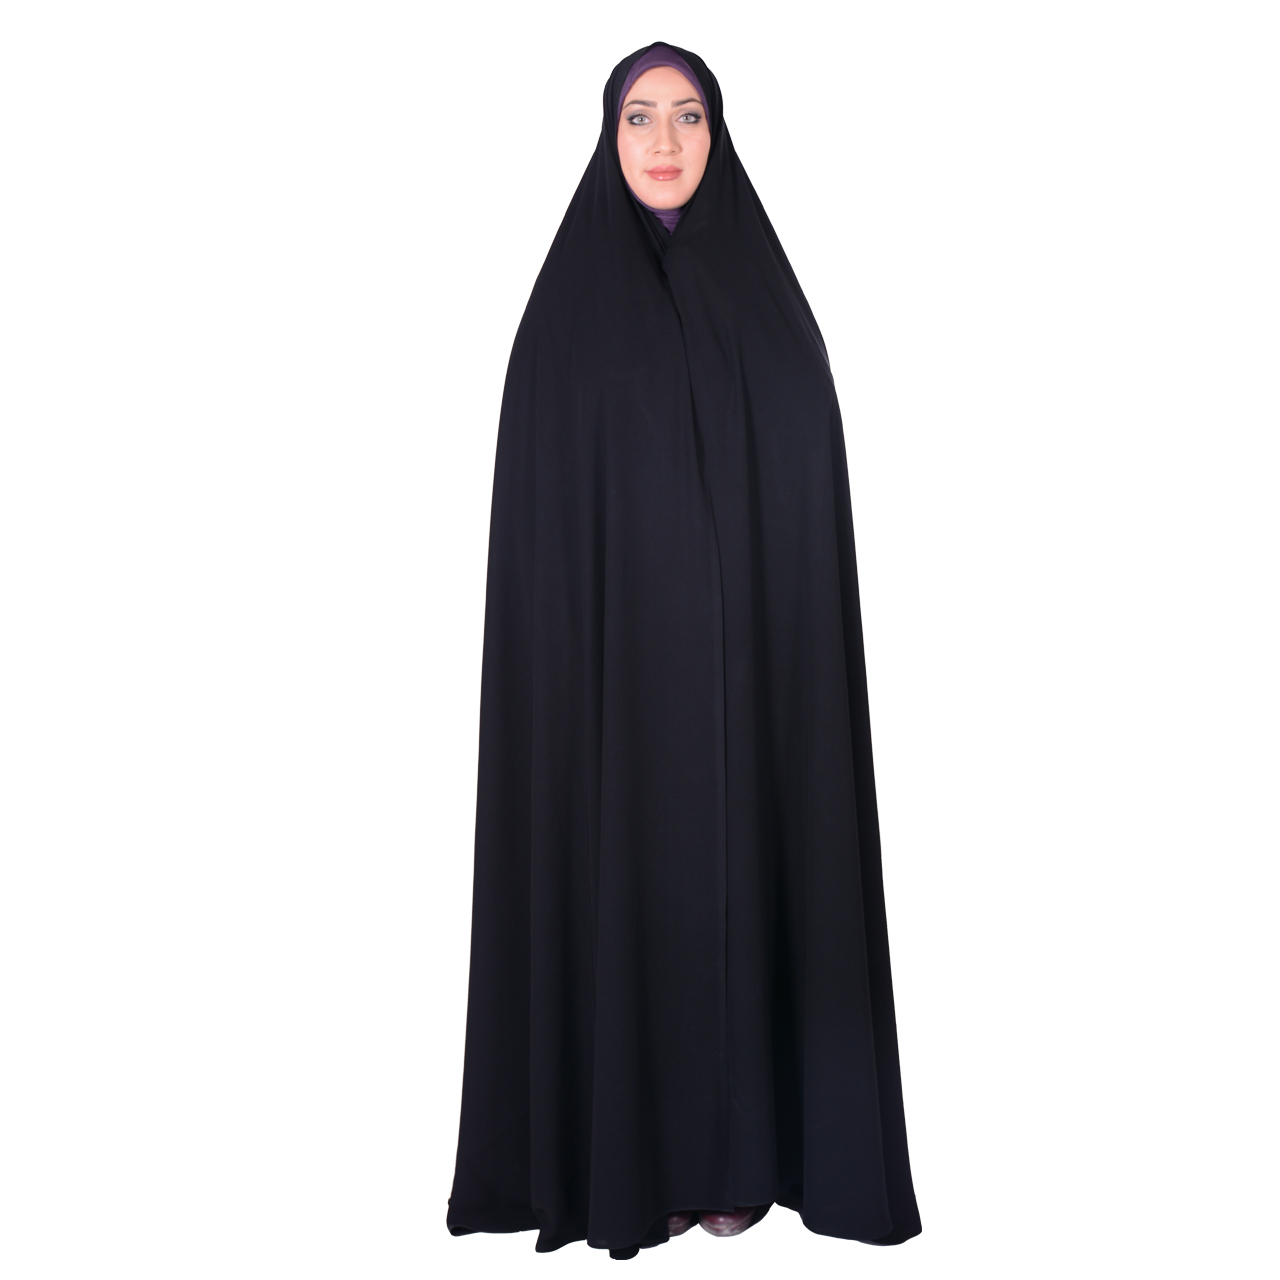 چادر سنتی شهر حجاب مدل ایرانی تایتانیک کریستال VIP کد 8008 -  - 1